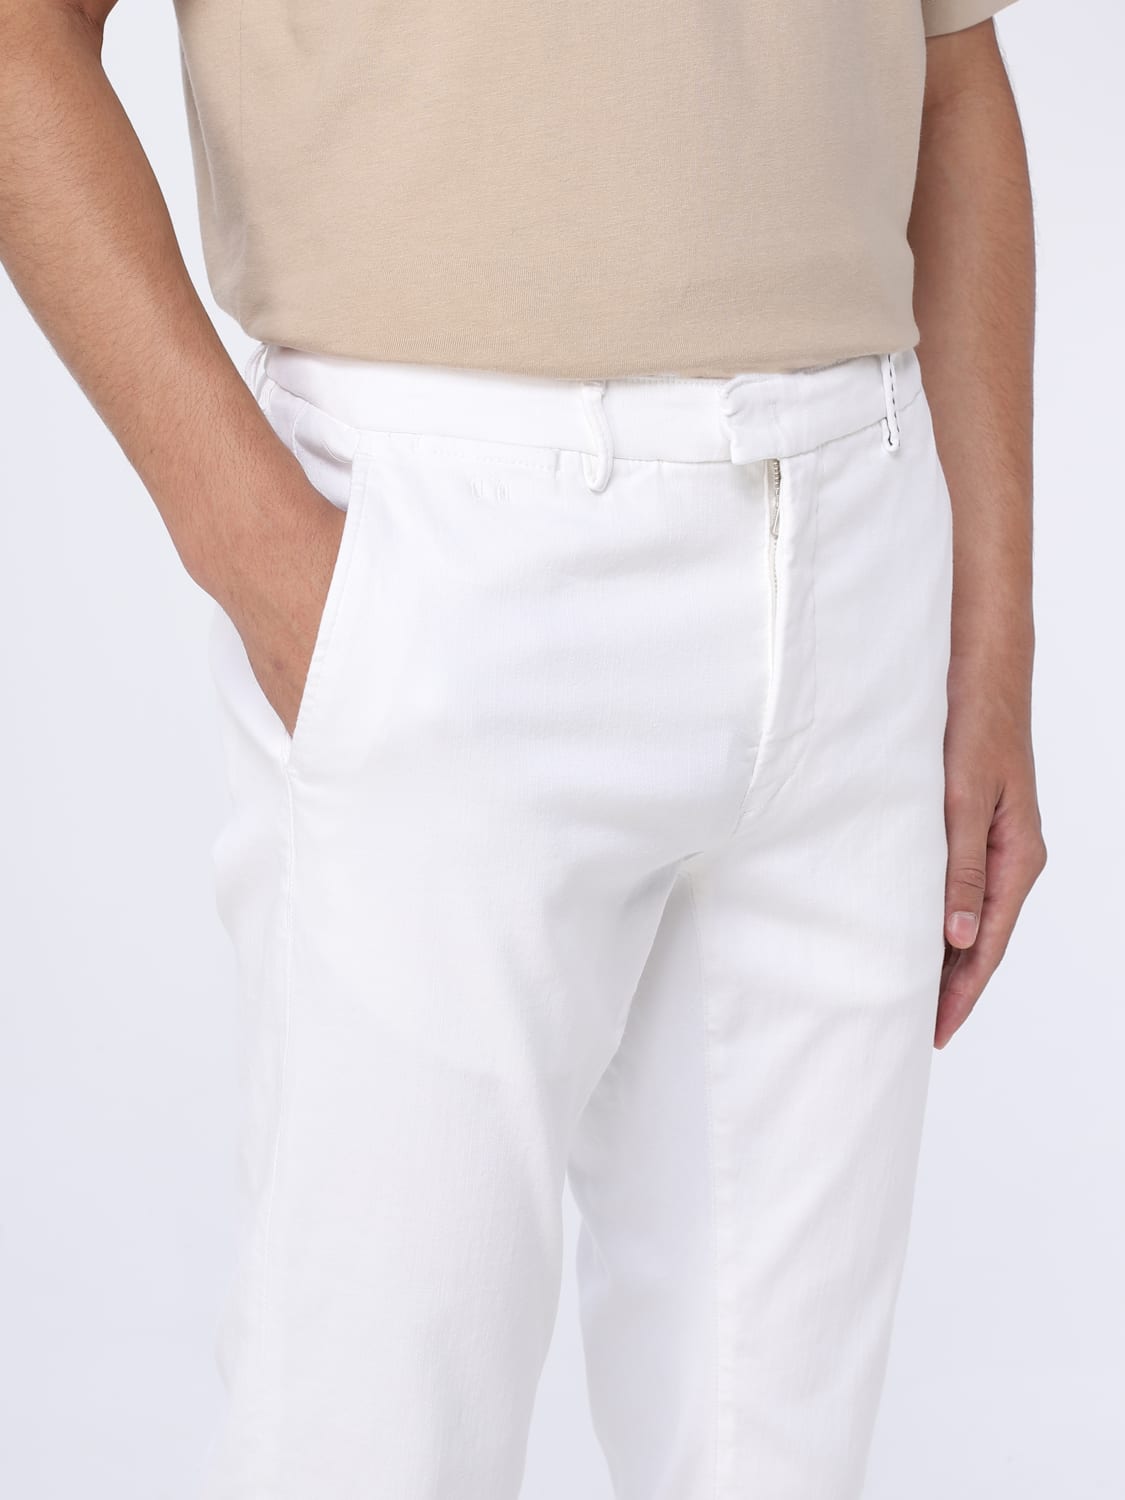 TRAMAROSSA: pants for man - White | Tramarossa pants LUISLI G125 OLD ...